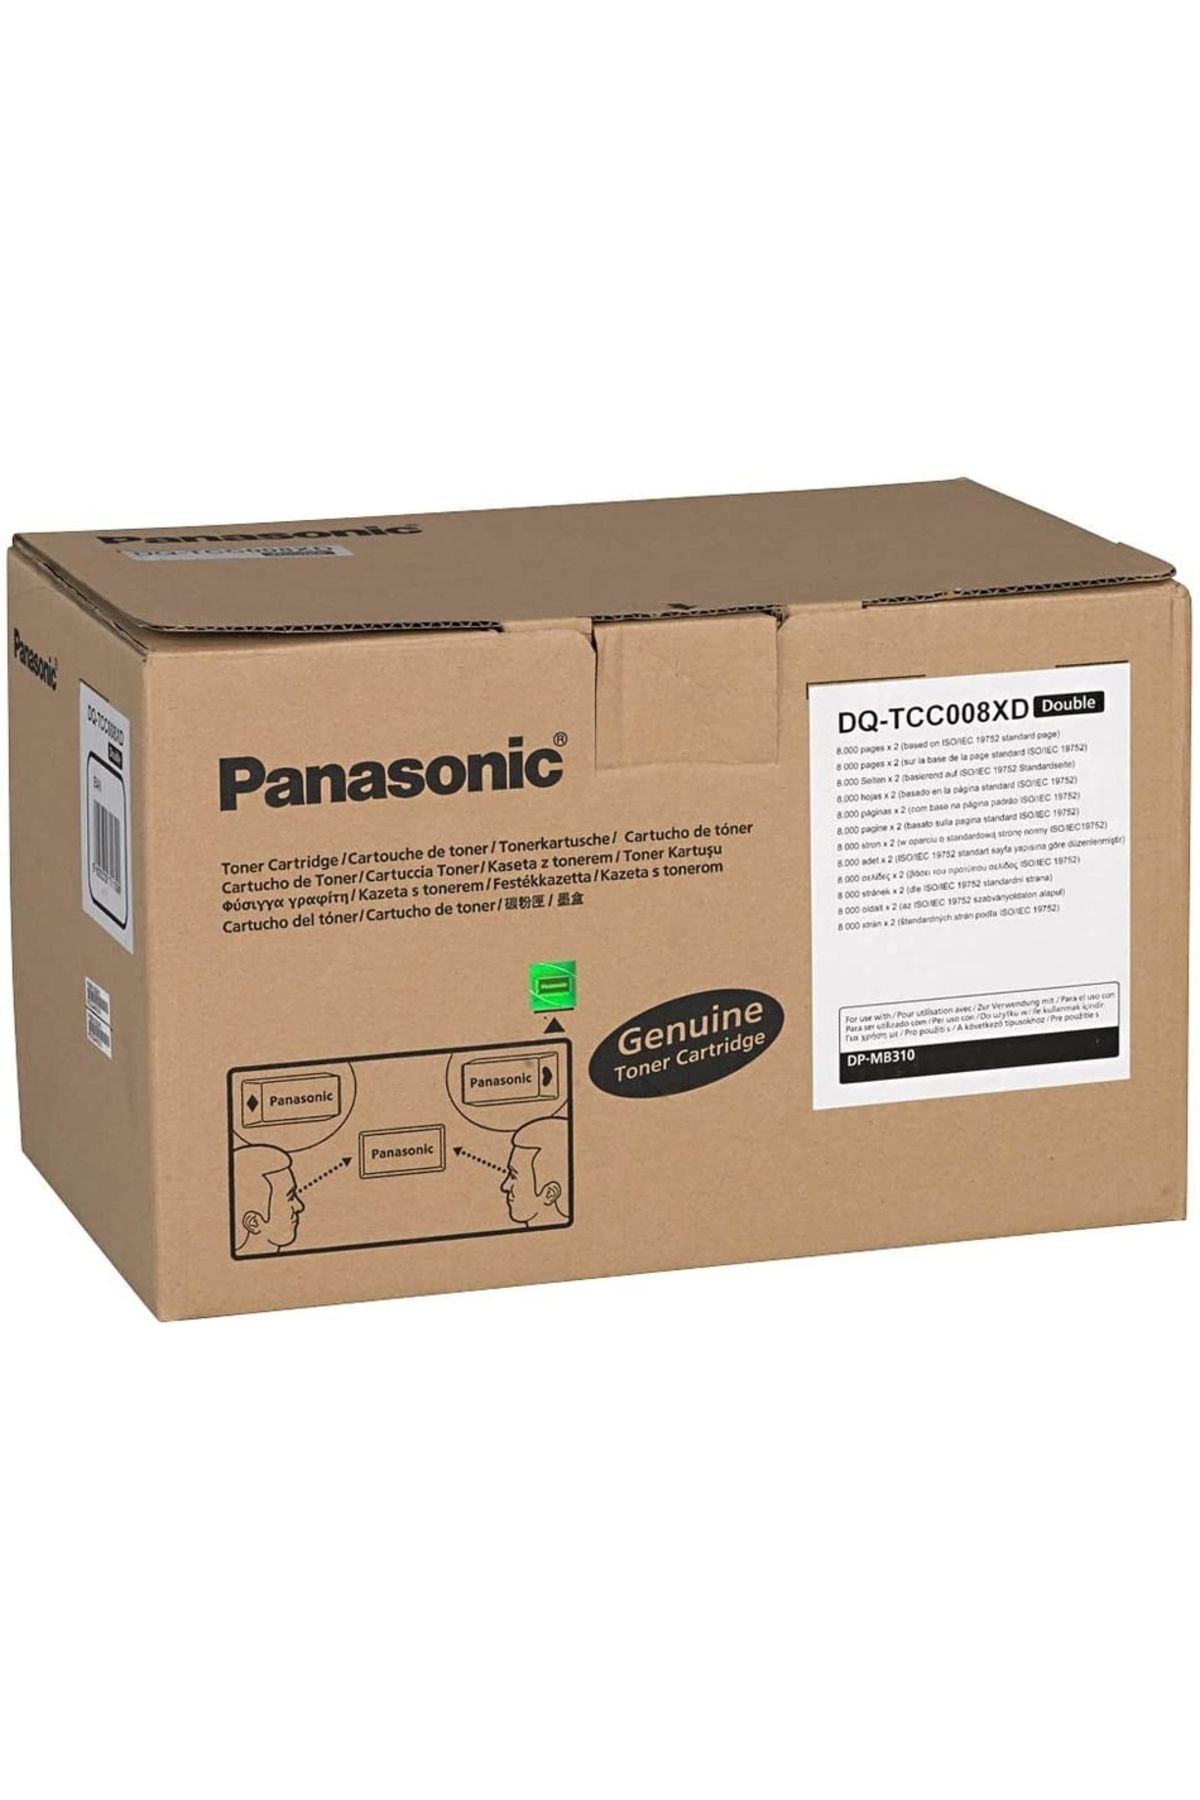 Panasonic HPZR Panasonic DQ-TCC008XD  Toner İkili Paket